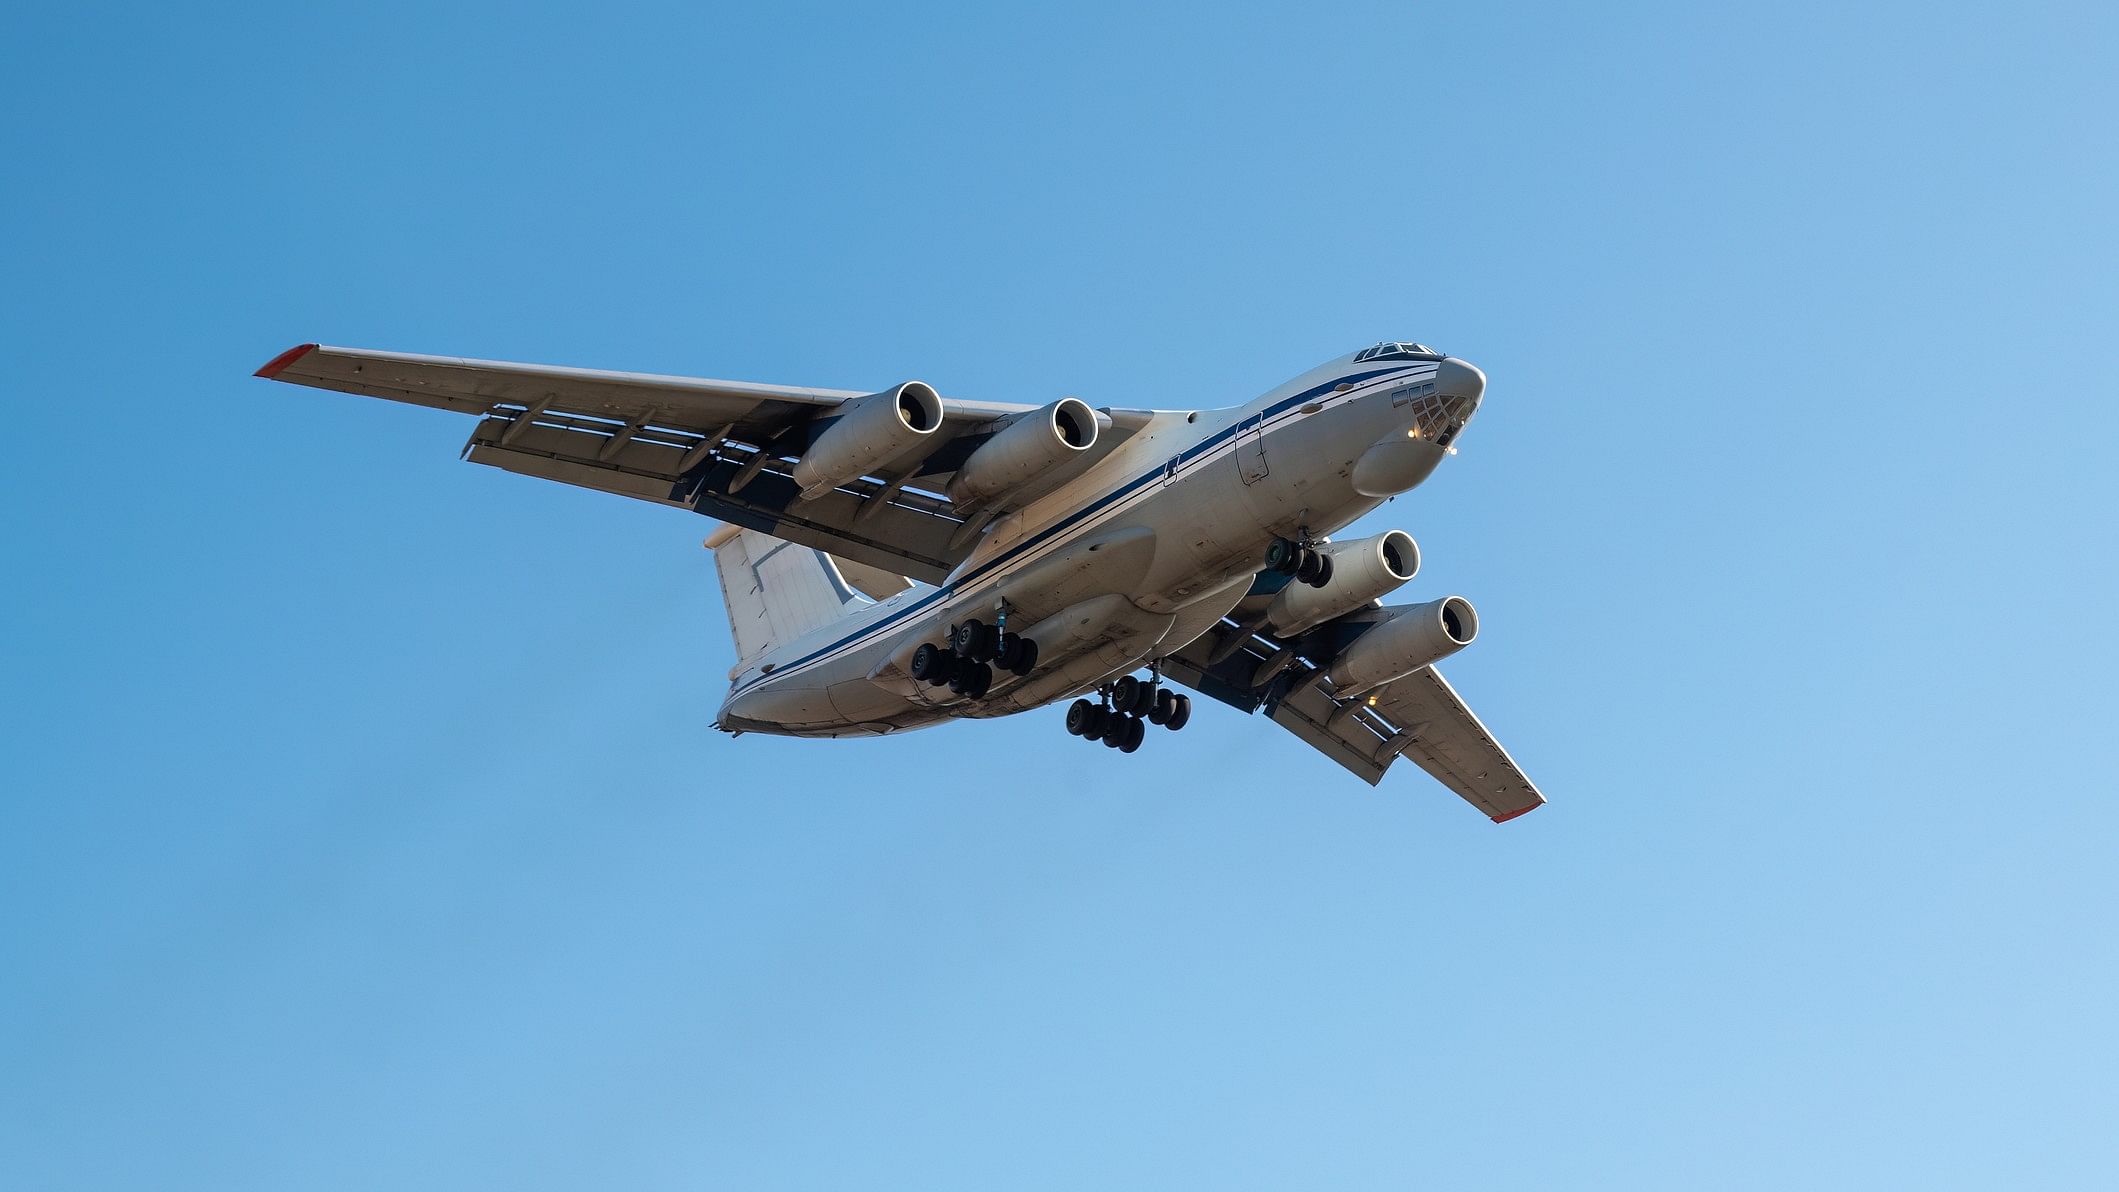 <div class="paragraphs"><p>Representative image showing an Il-76 plane.</p></div>